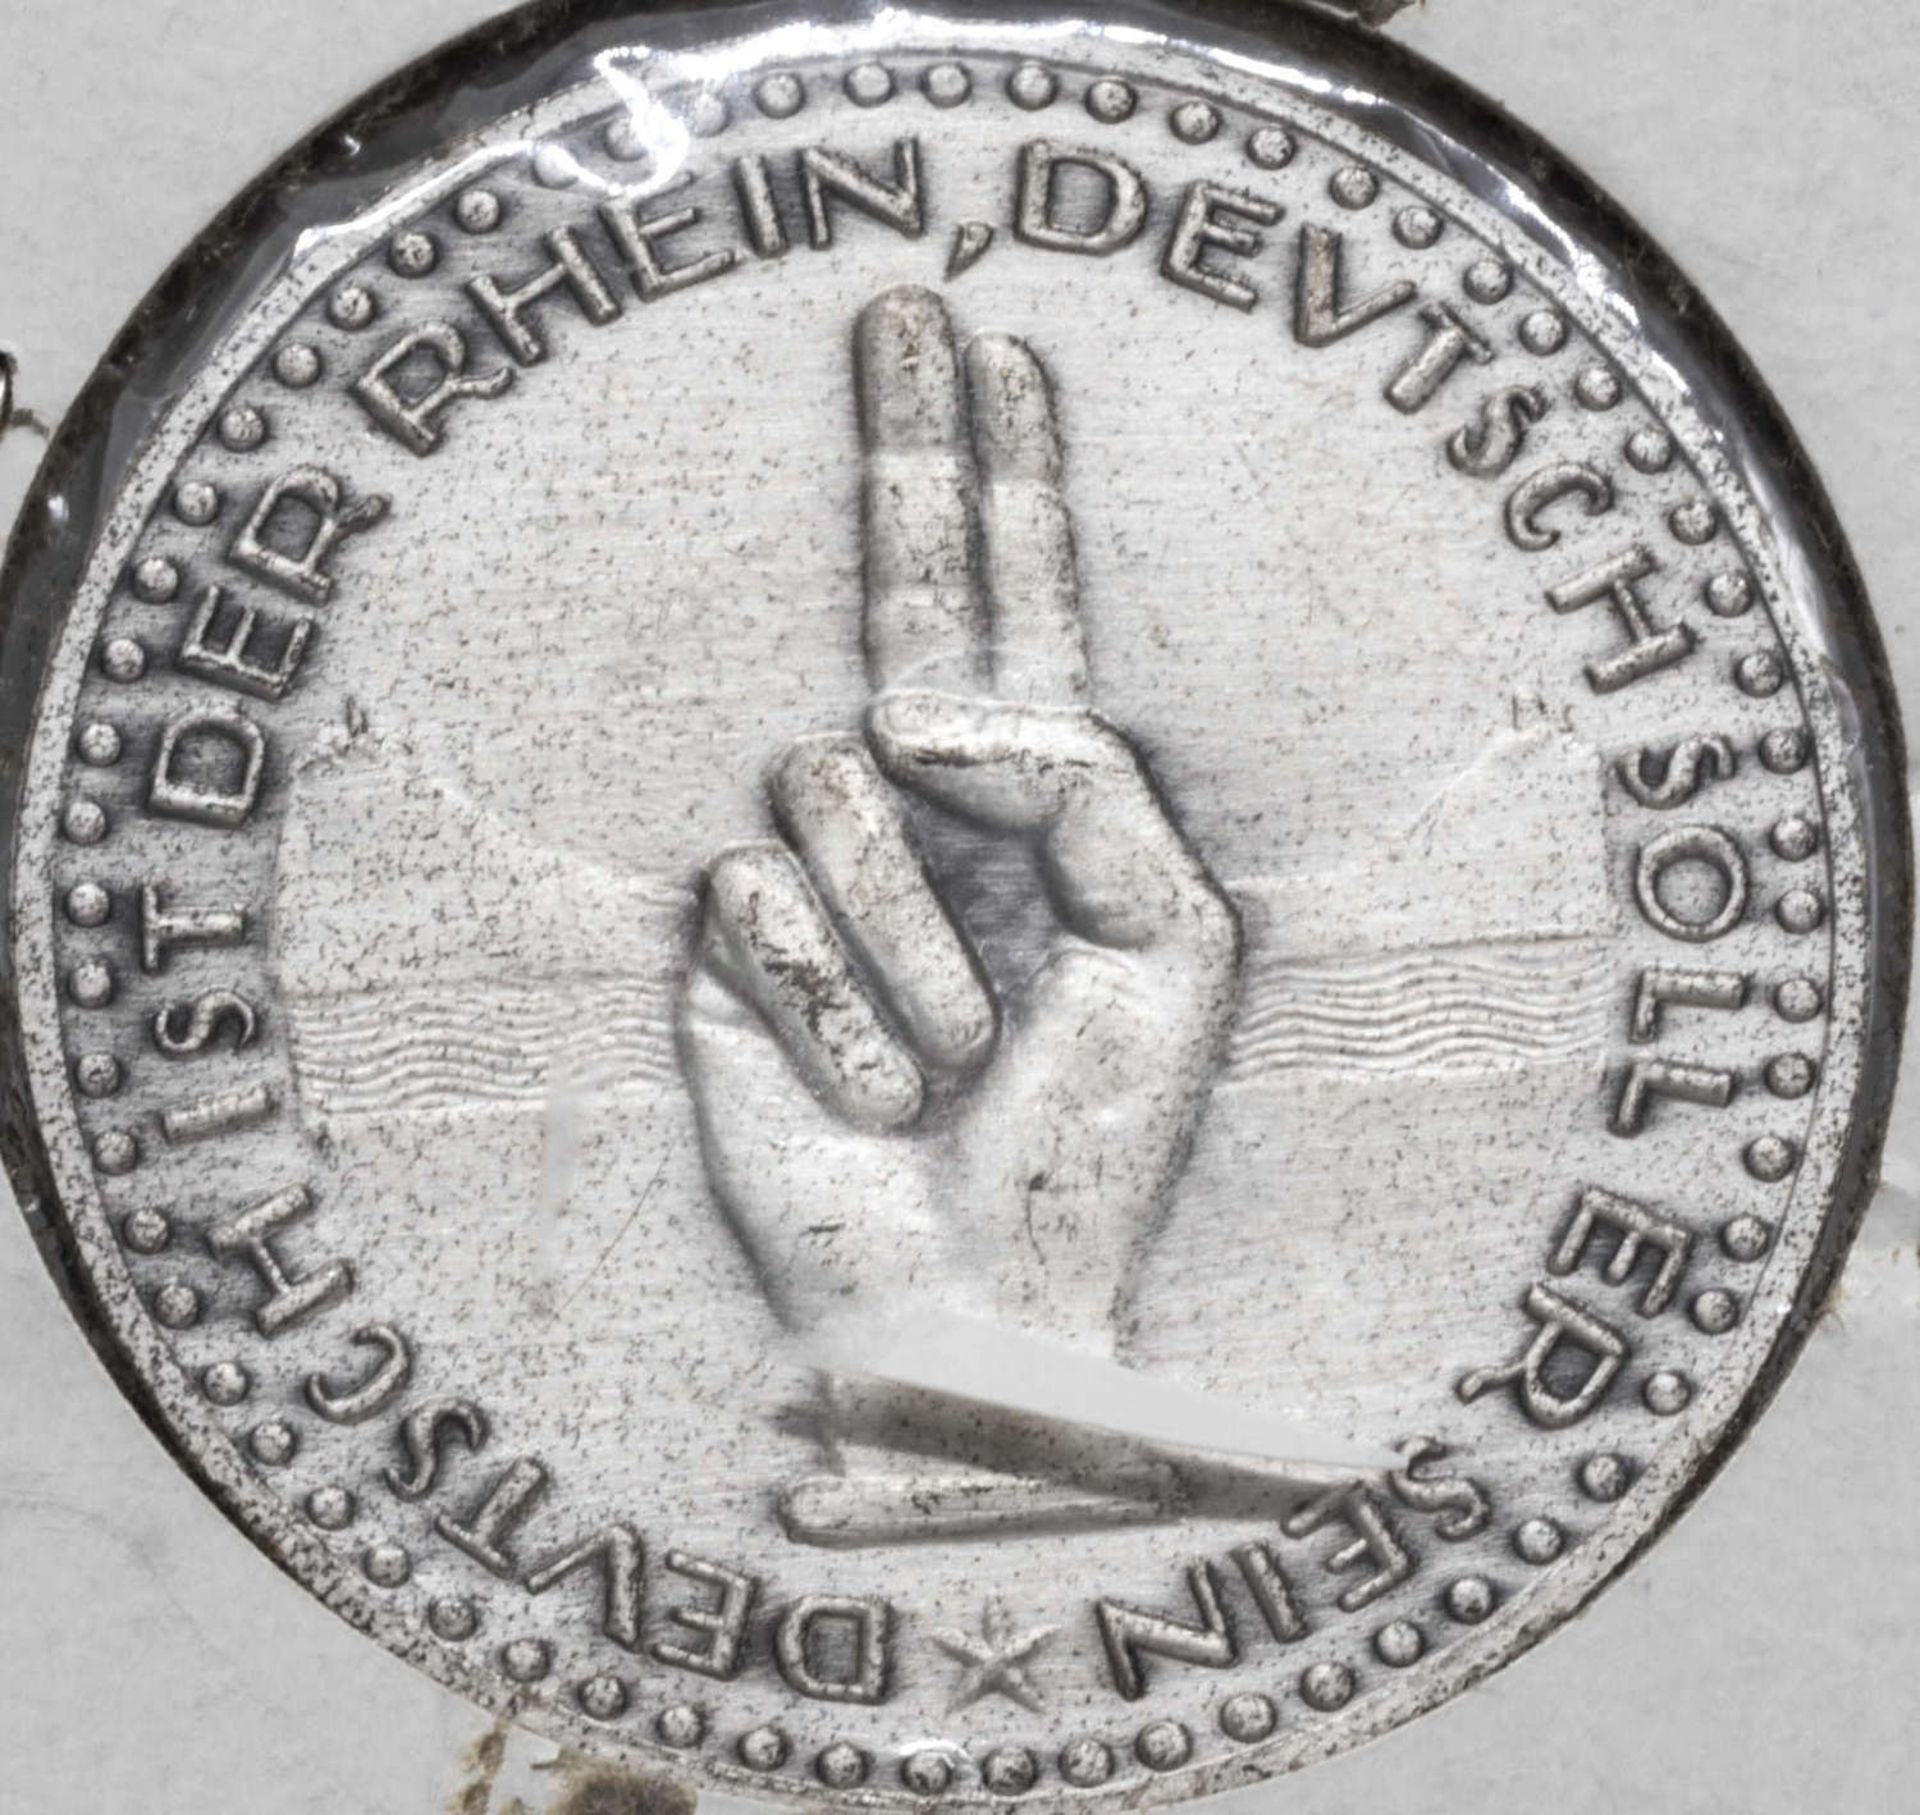 Weimarer Republik 1925, Medaille "1000 Jahre deutscher Rhein 925 - 1925". Signiert: MM. Gewicht: ca. - Bild 2 aus 2